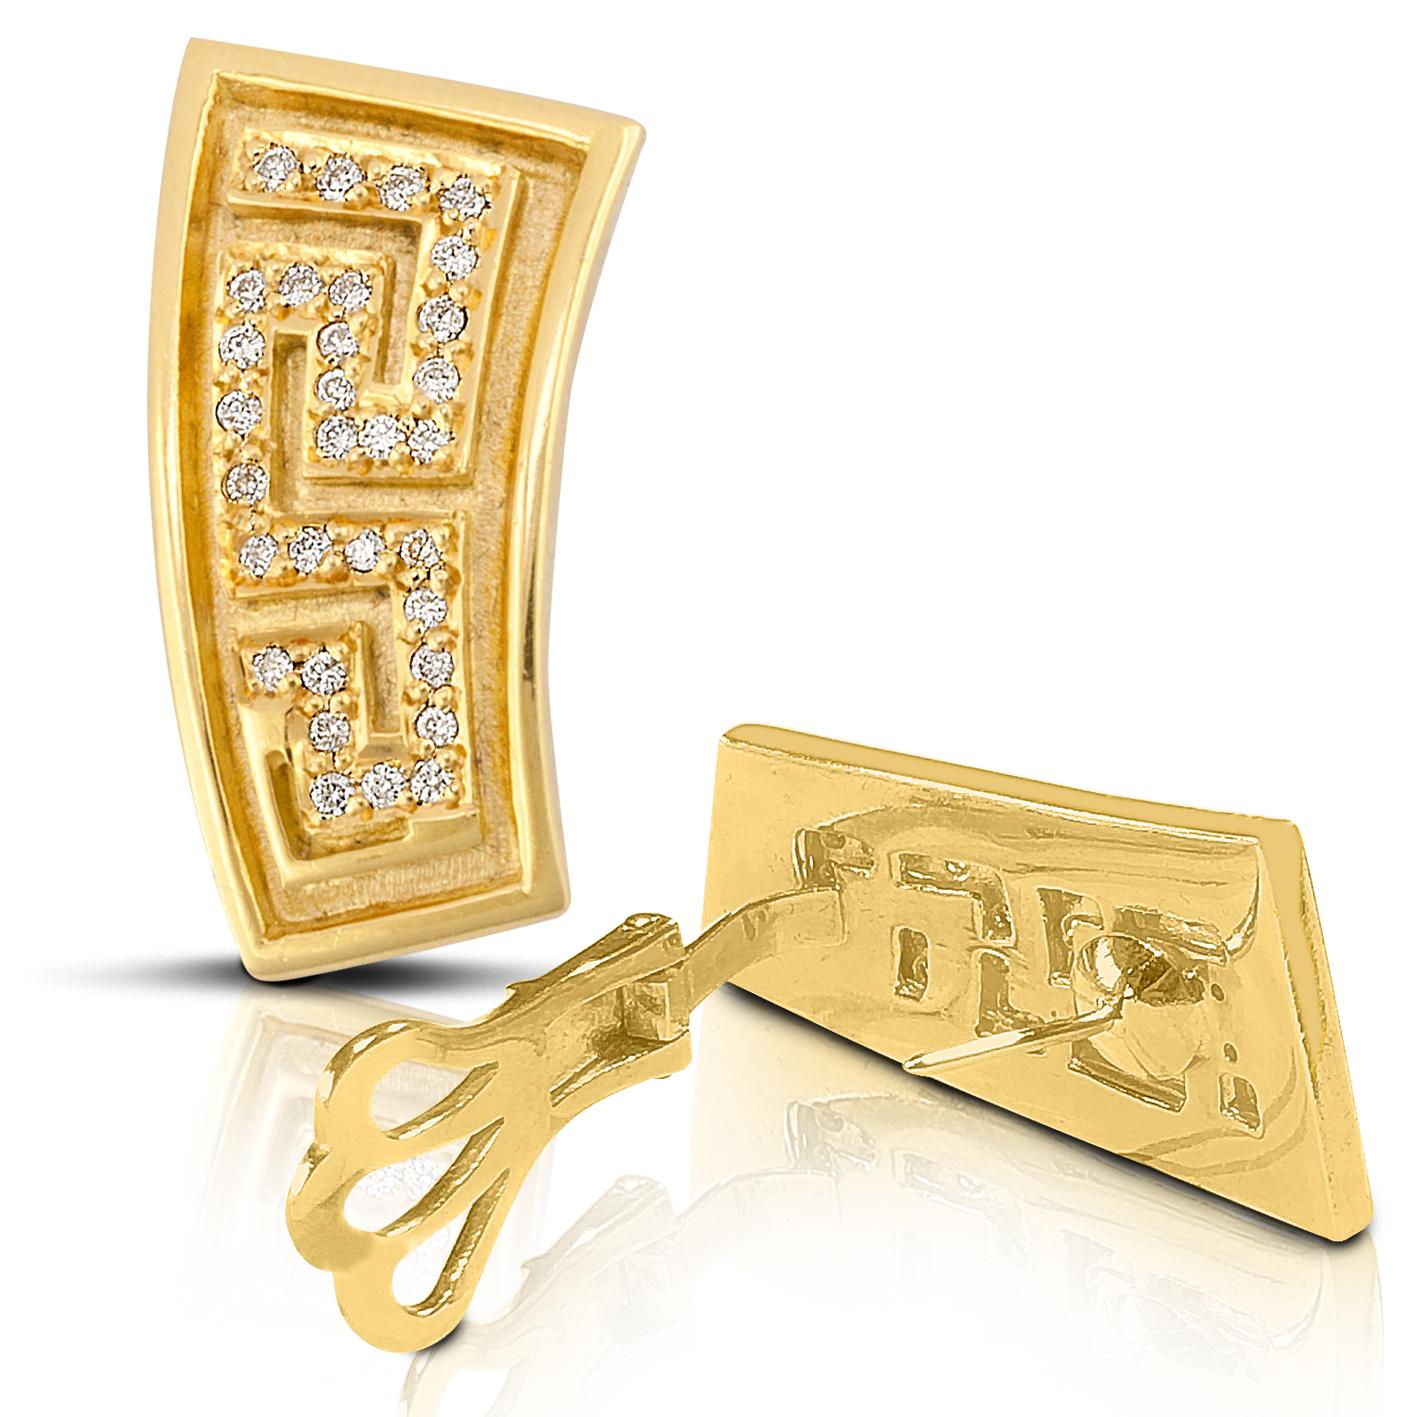 S. Georgios 18 Karat Gelbgold Hand Made Diamant Ohrringe mit dem griechischen Schlüssel Design alle maßgeschneiderte, die Ewigkeit symbolisiert. Sie gilt als Symbol für ein langes Leben und ist eines der klassischsten Designs der Welt.
Die